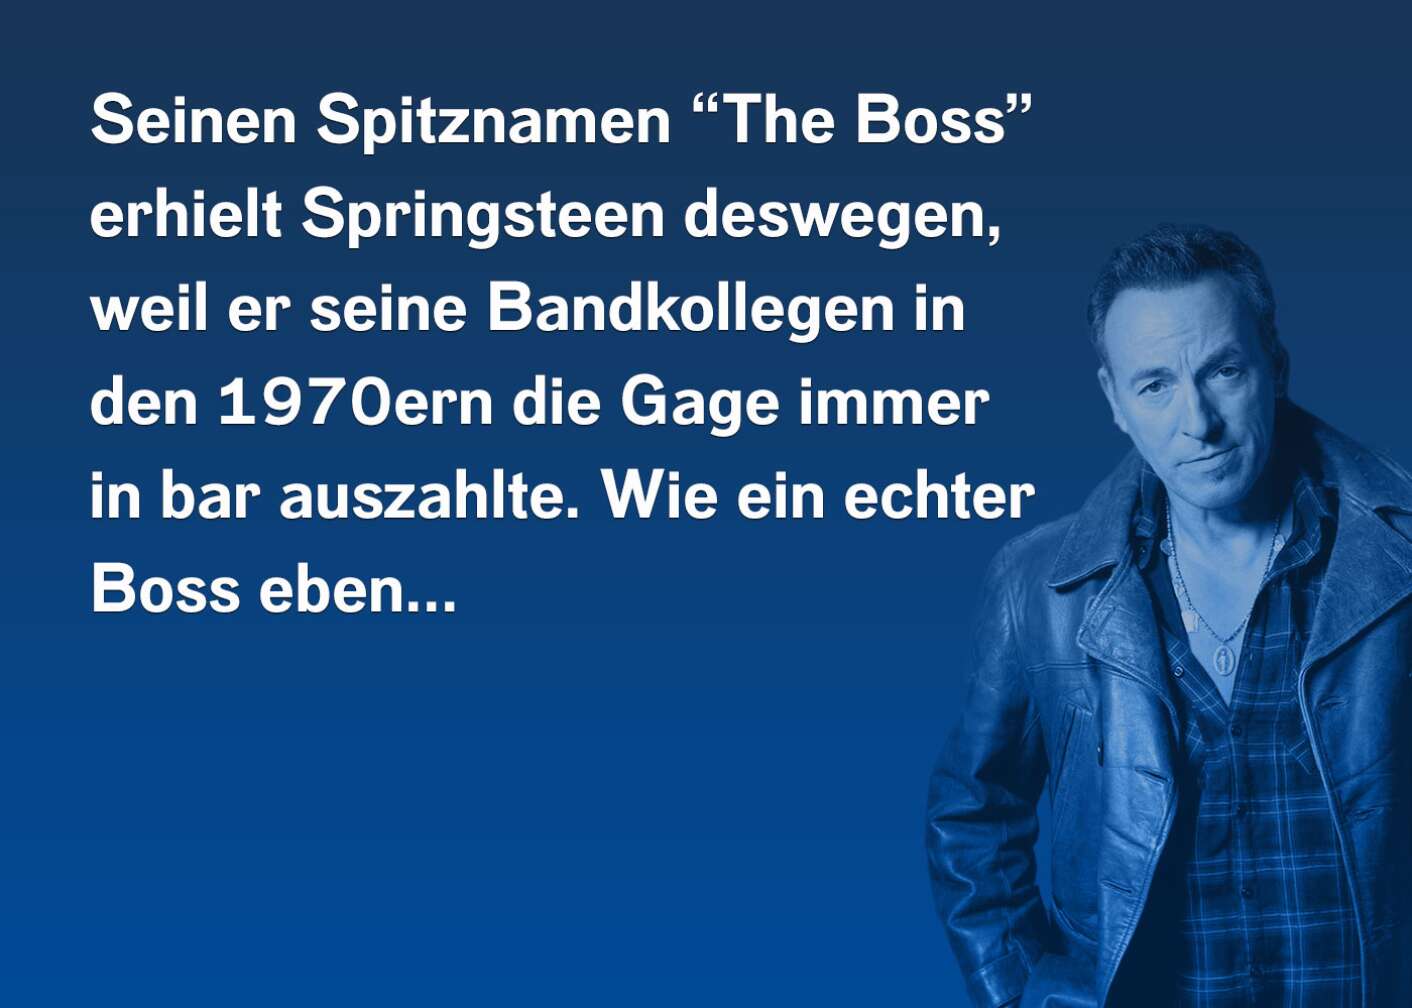 Seinen Spitznamen "The Boss" erhielt Springsteen deswegen, weil er seinen Bandkollegen in den 1970ern die Gage immer in bar auszahlte. Wie ein echter Boss eben...